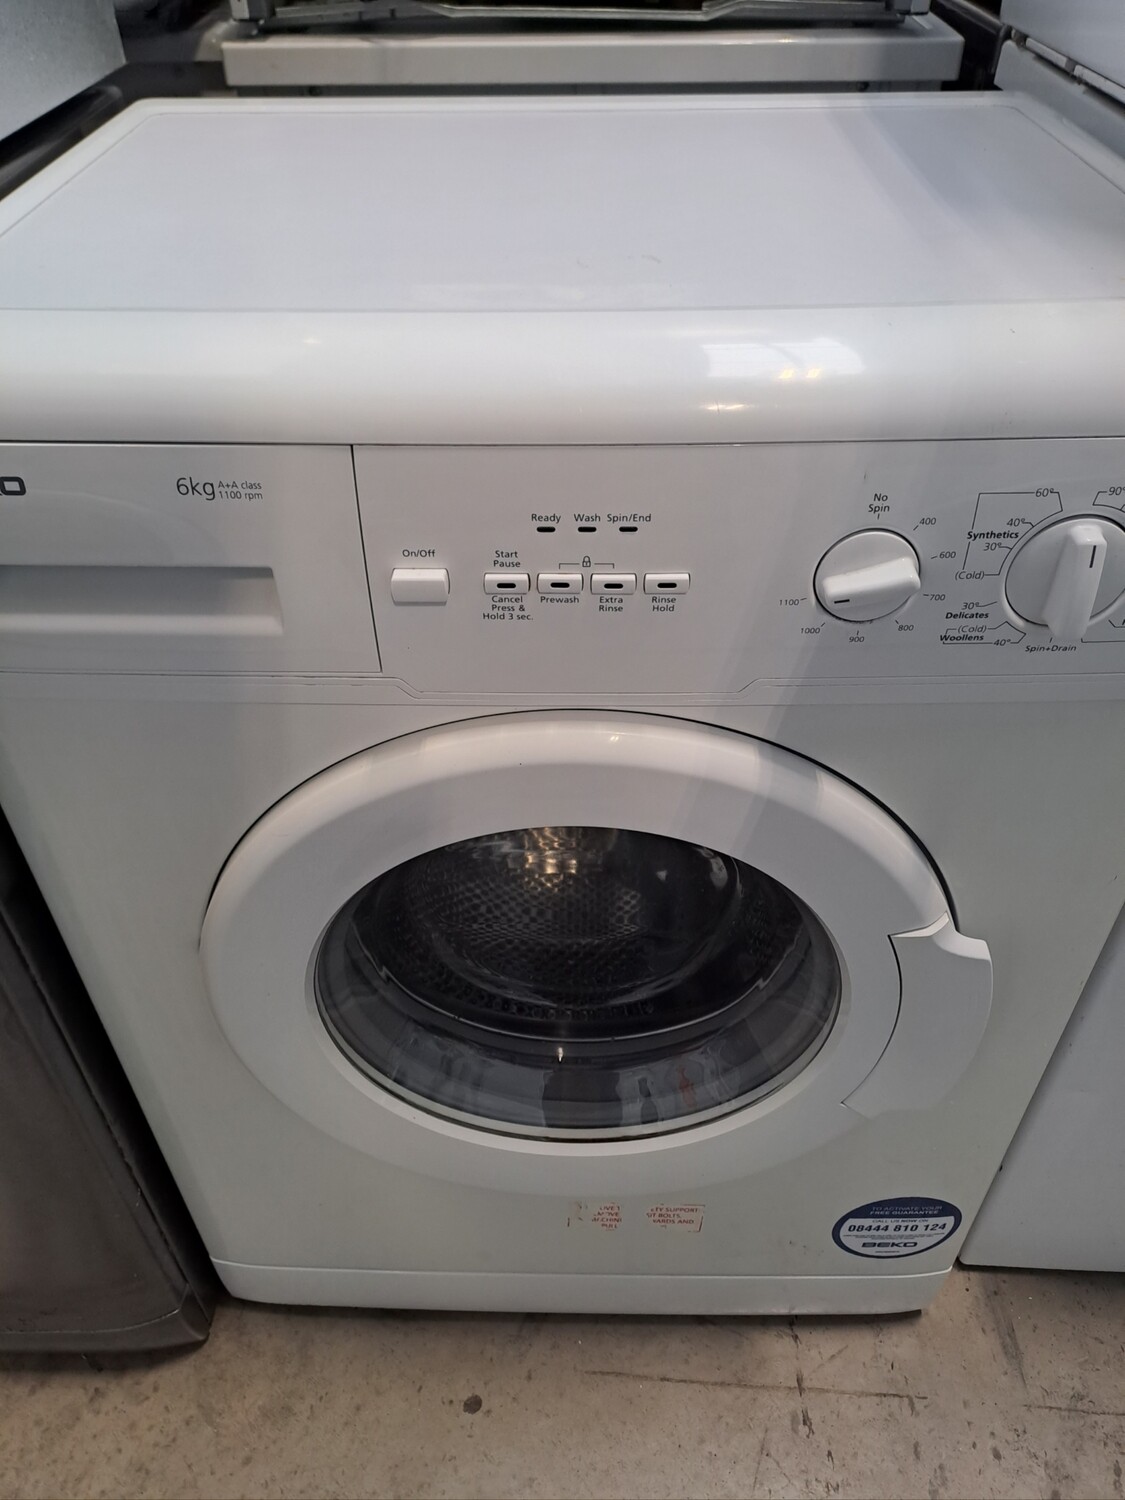 Beko WM6110W 6kg Load 1100 Spin Washing Machine - White - Refurbished - 3 Month Guarantee